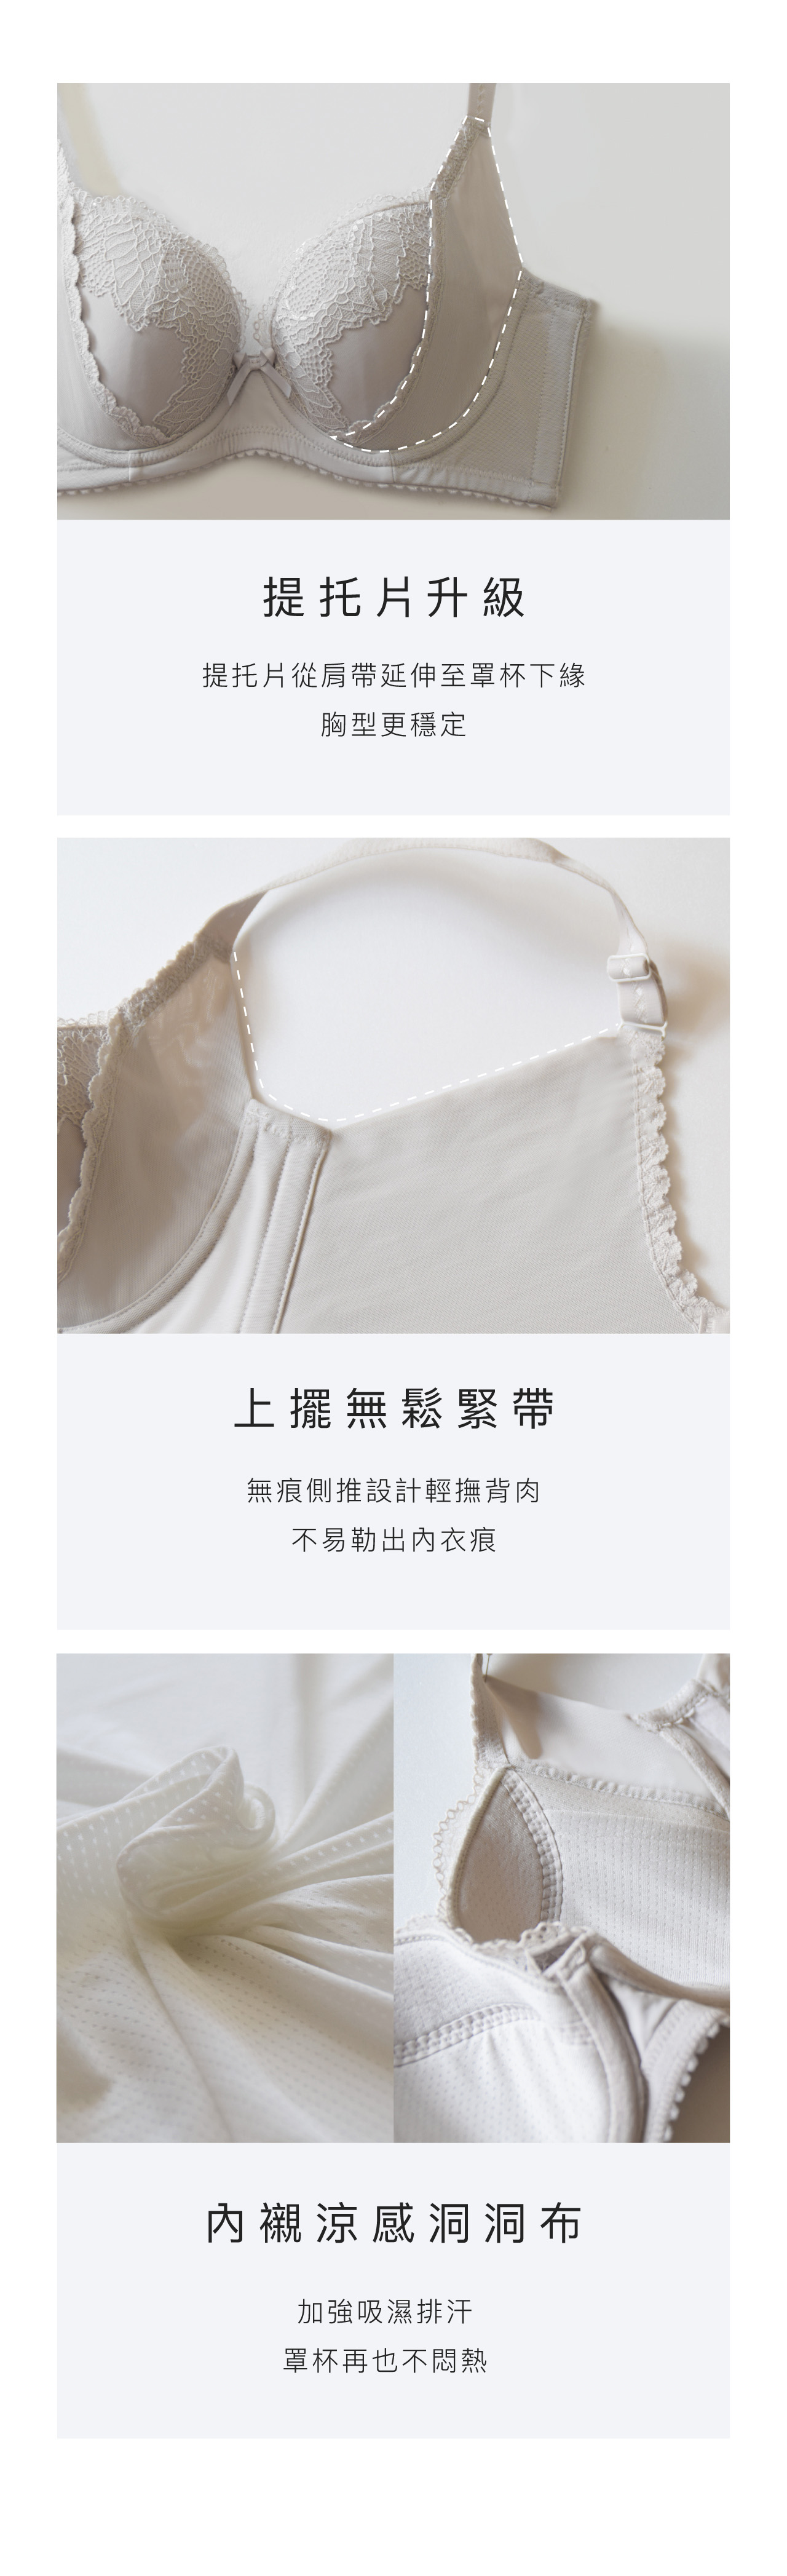 艾莱琪】Venus Ultimate Covering Comfortable Underwear BCDEF Cup